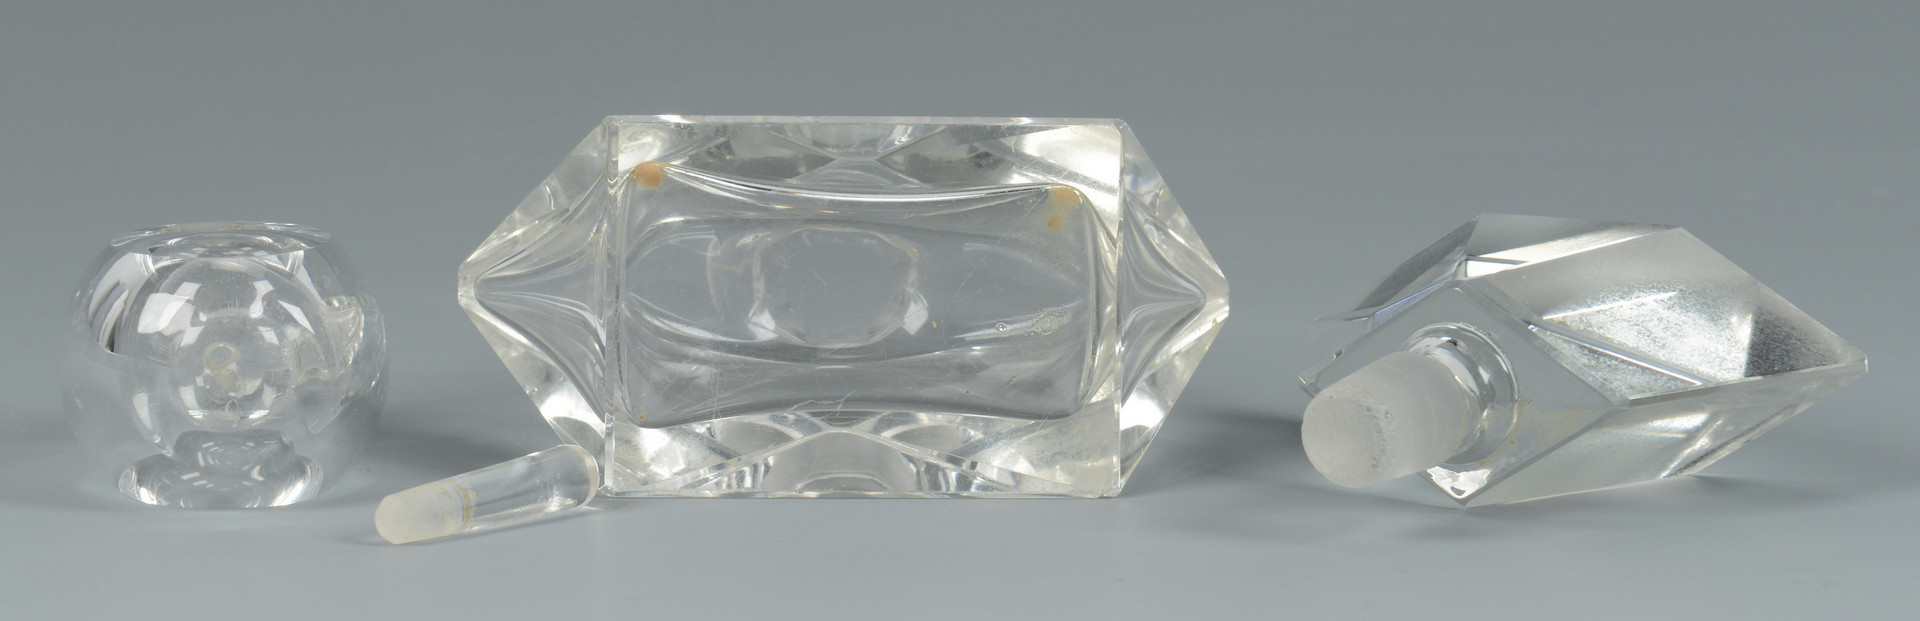 Lot 877: Baccarat "Messina" Crystal